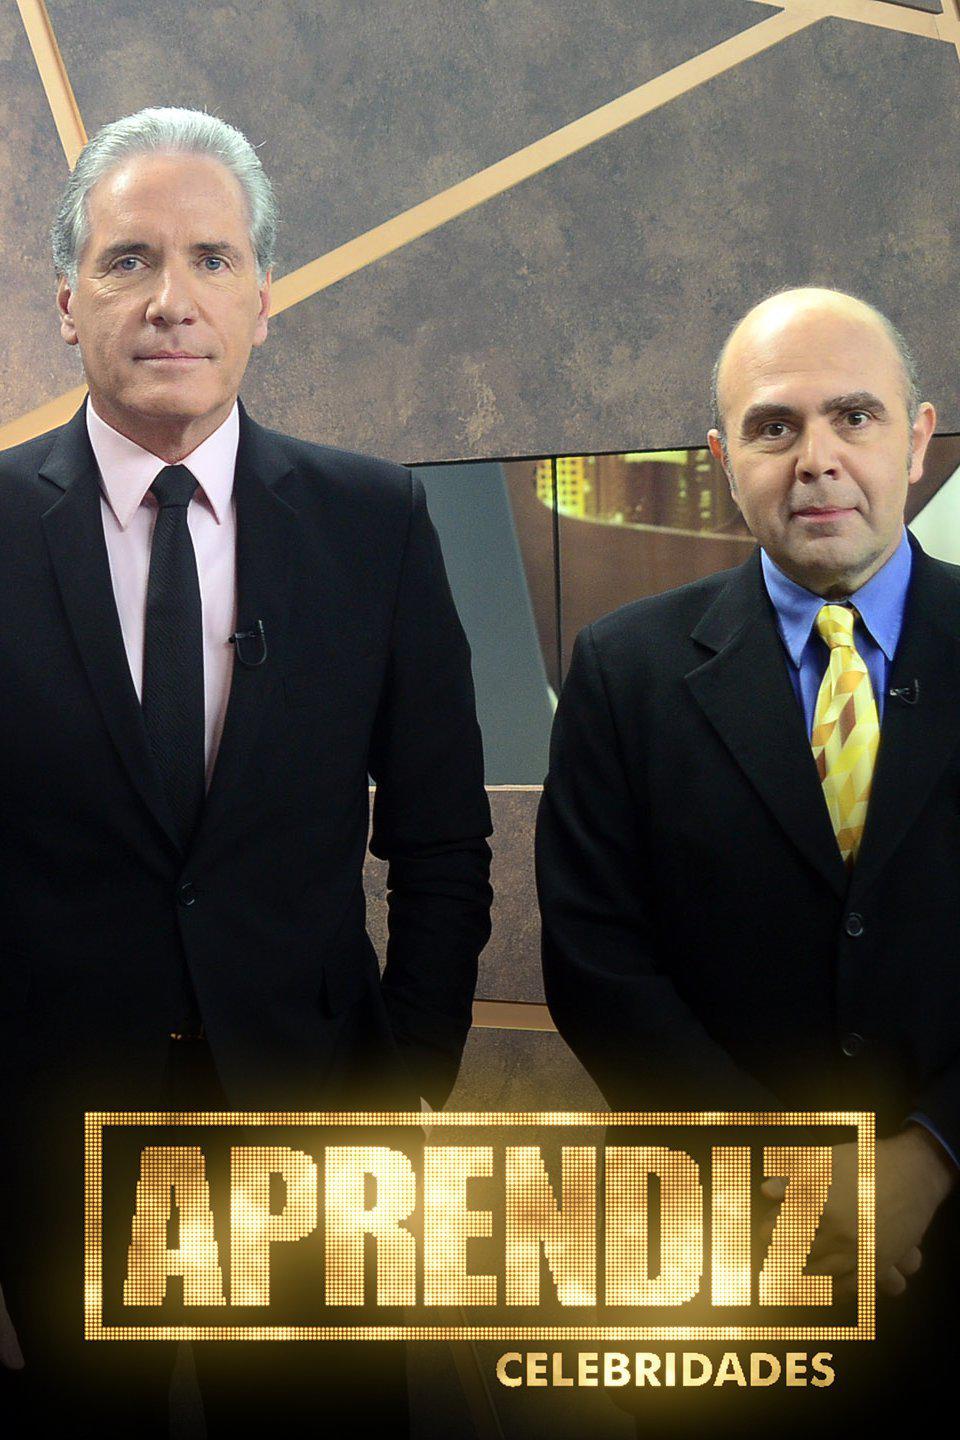 TV ratings for Aprendiz Celebridades in Argentina. RecordTV TV series